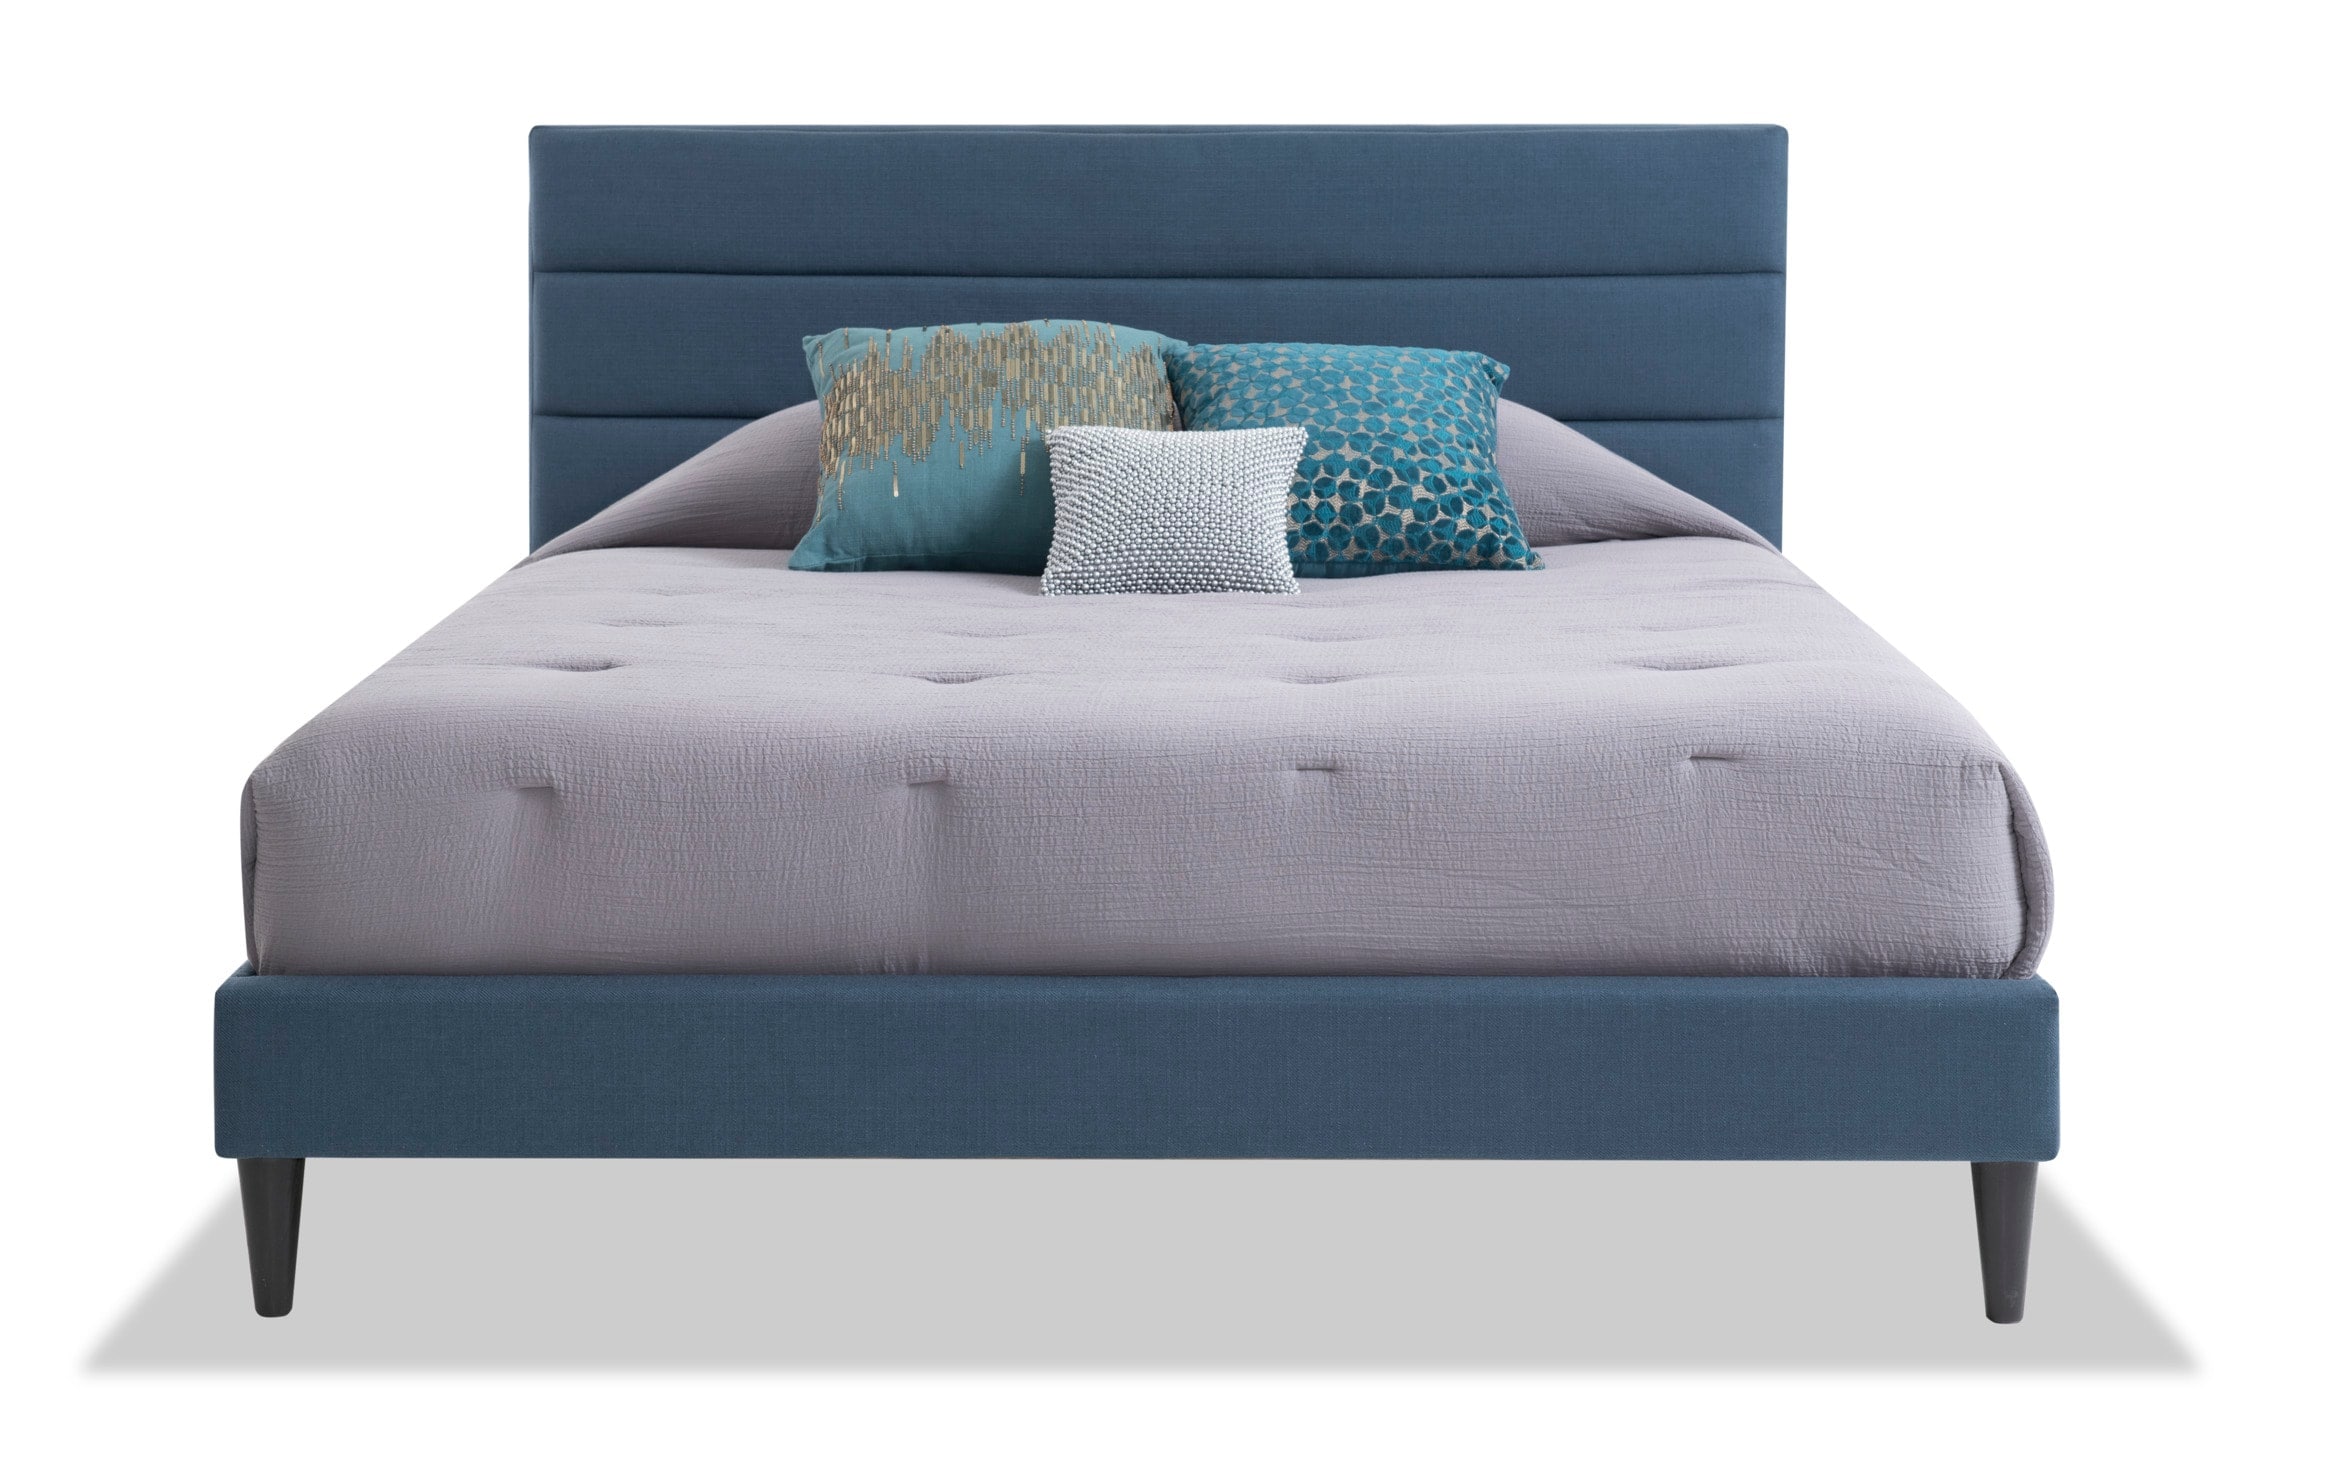 Vertellen atoom Haarvaten Lowell Horizontal Channel Blue Queen Bed | Outlet | Bob's Discount Furniture